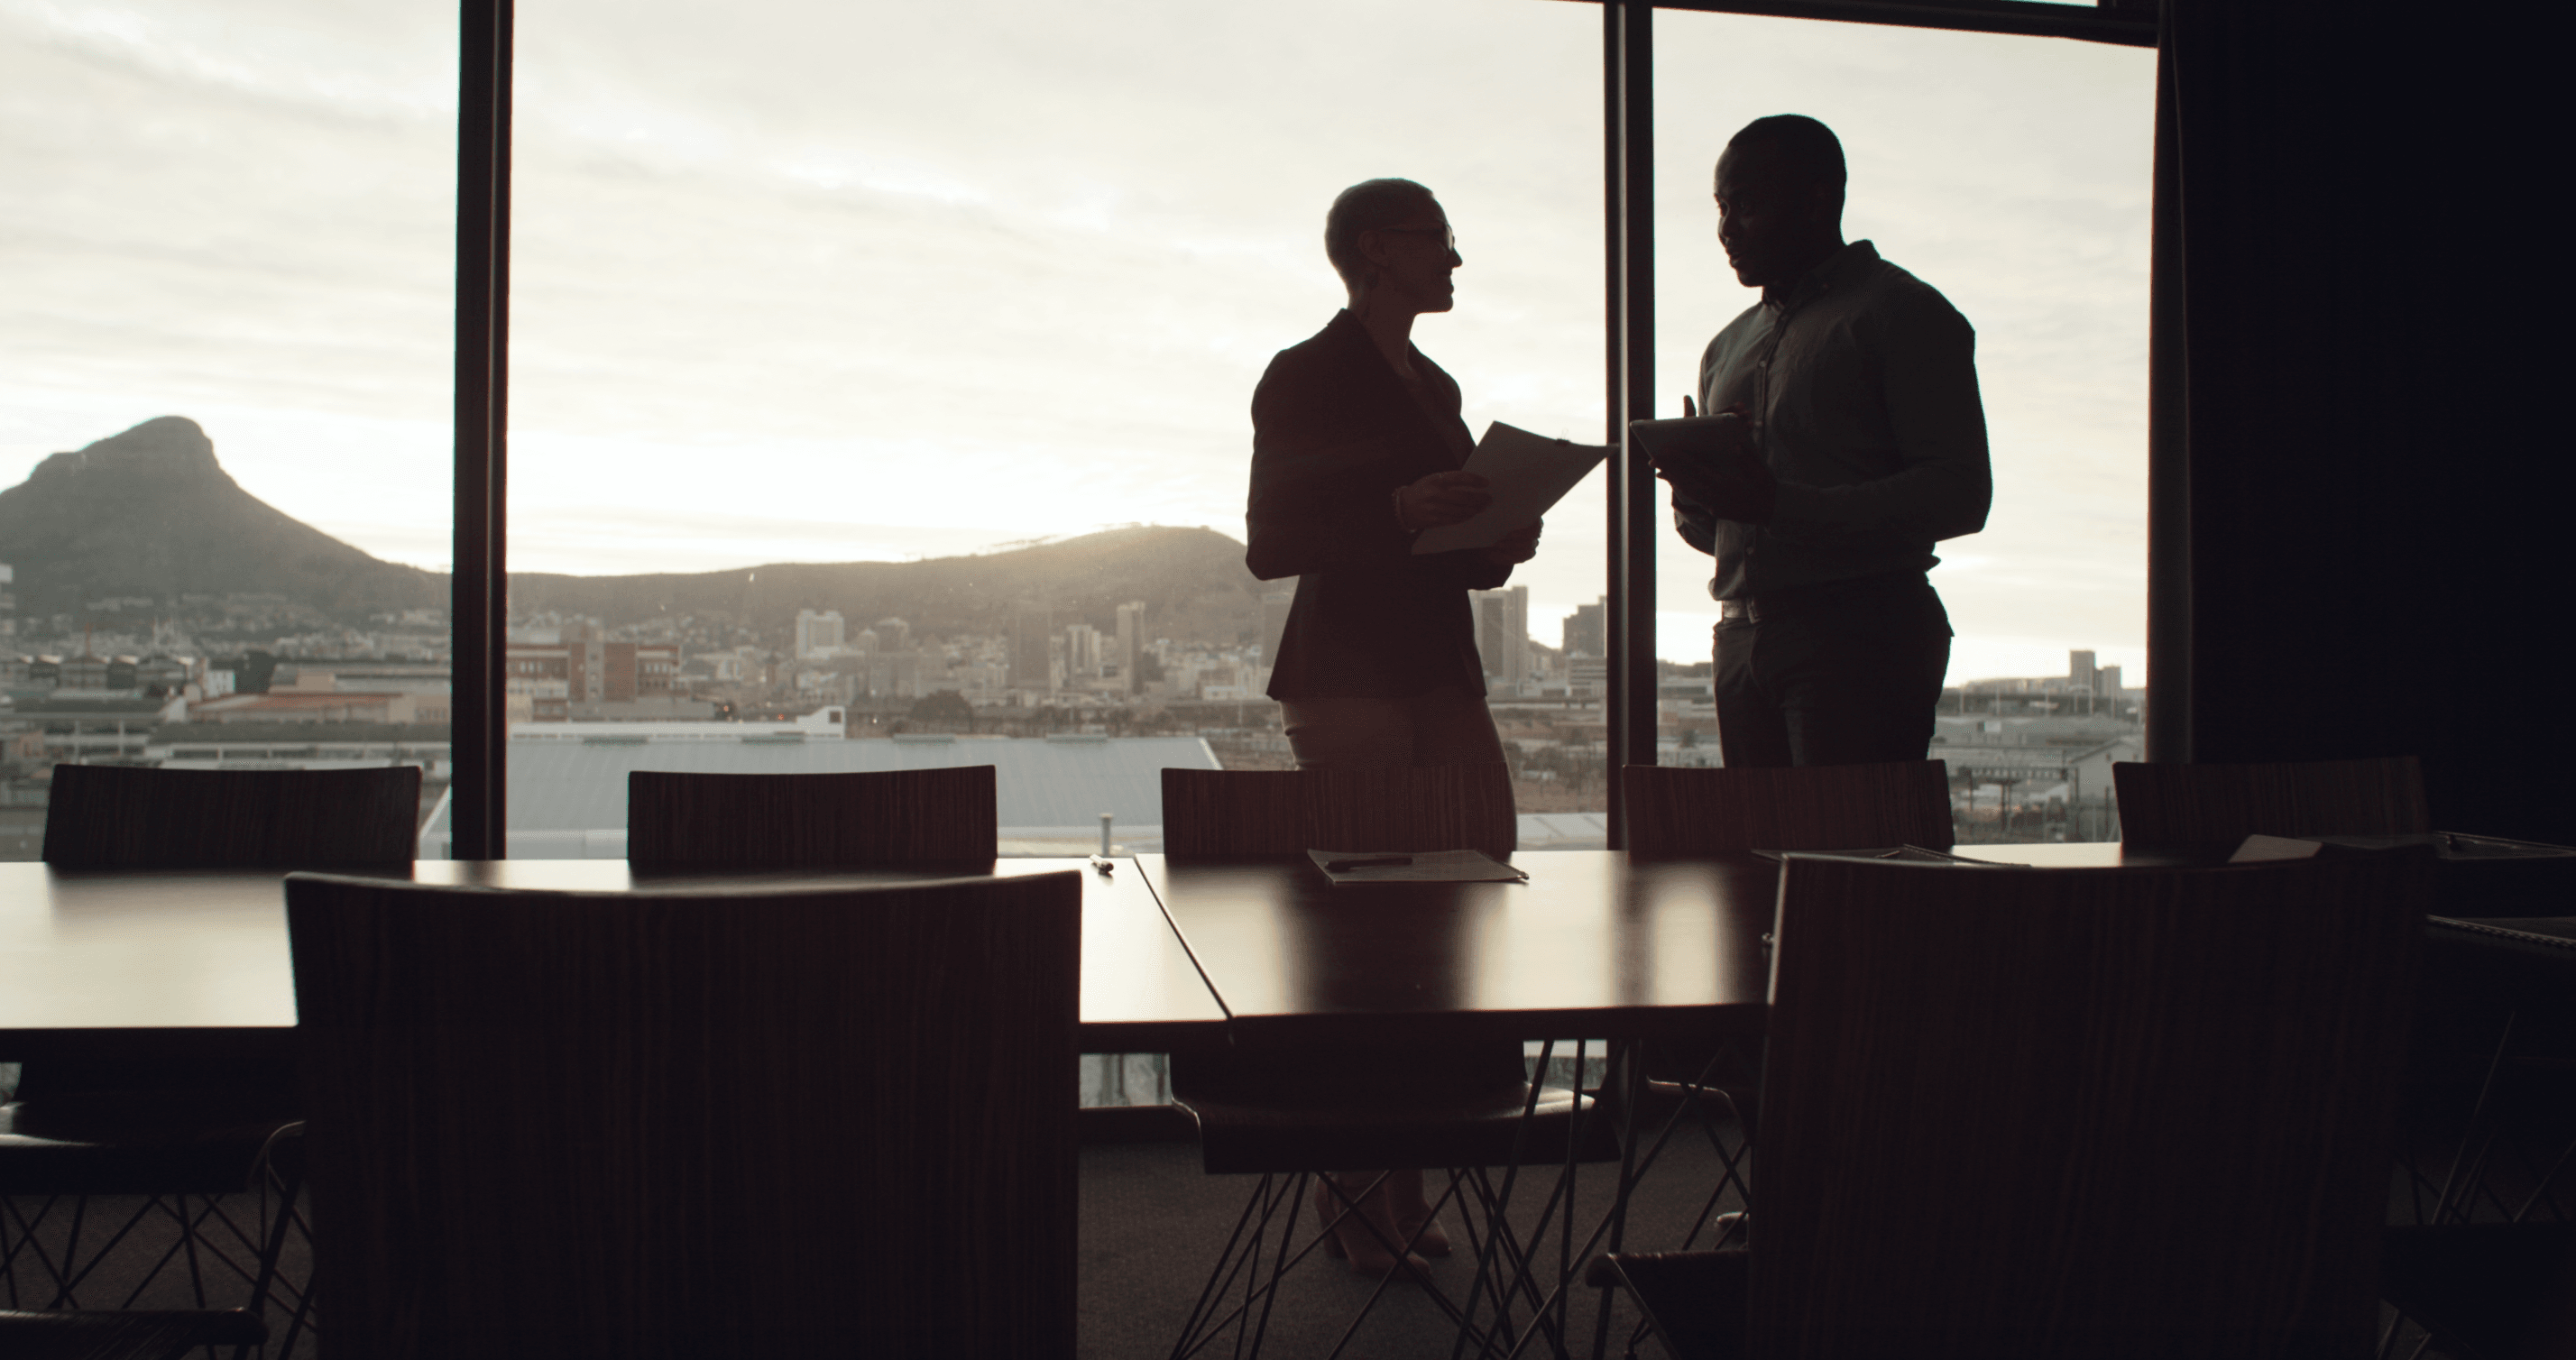 Abendsonne beleuchtet einen Meetingraum, in dem man die Umrisse zweier Geschäftsmänner im Gespräch sieht.